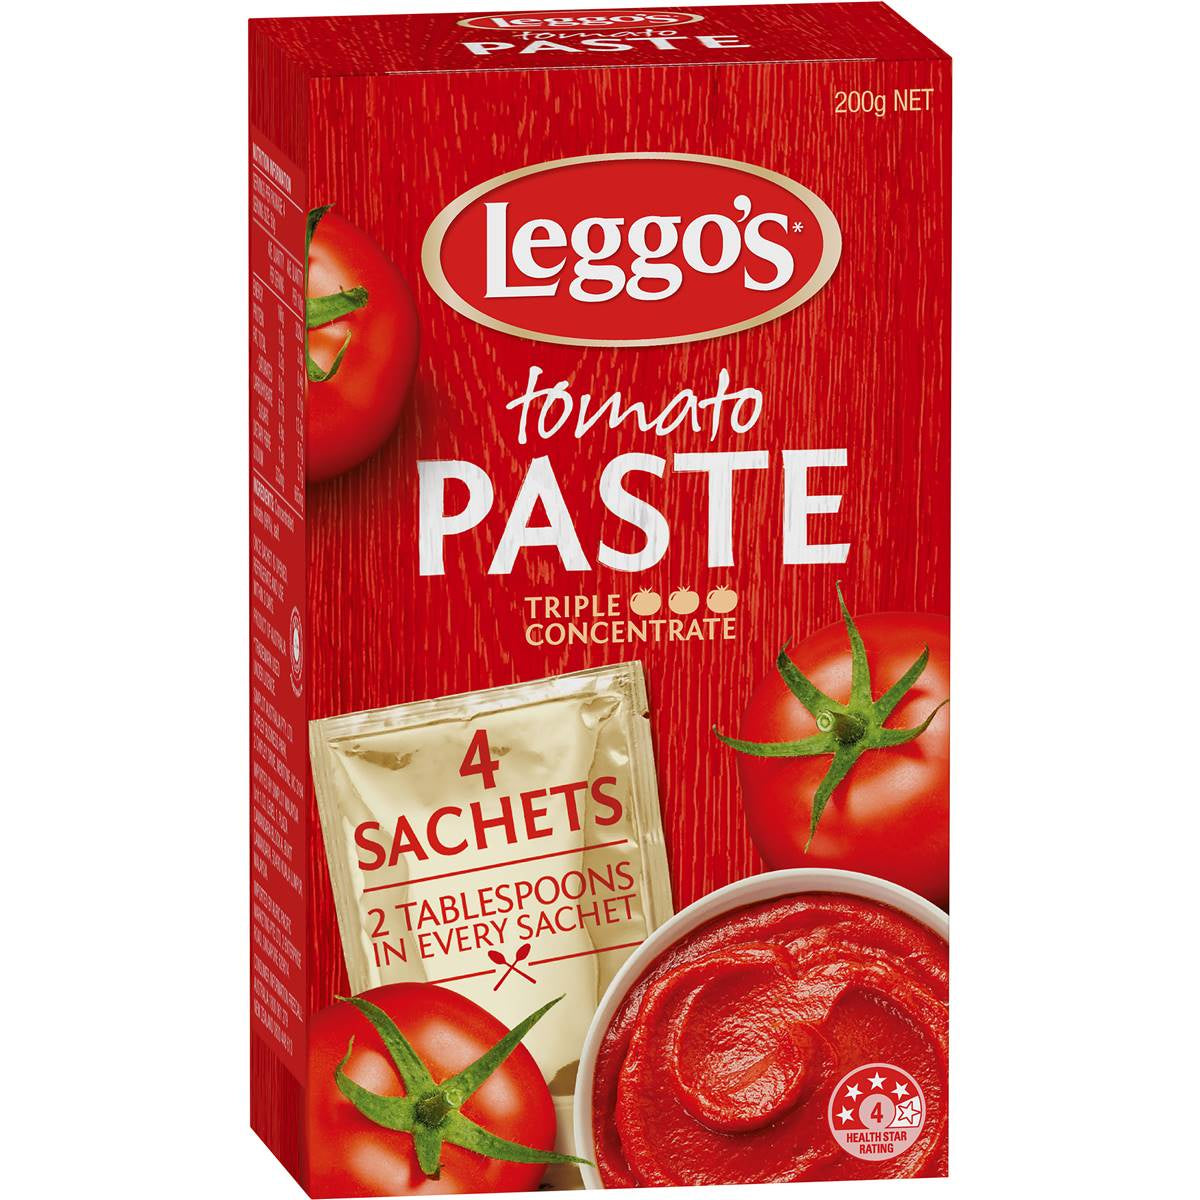 Leggos Tomato Paste Sachets 200g